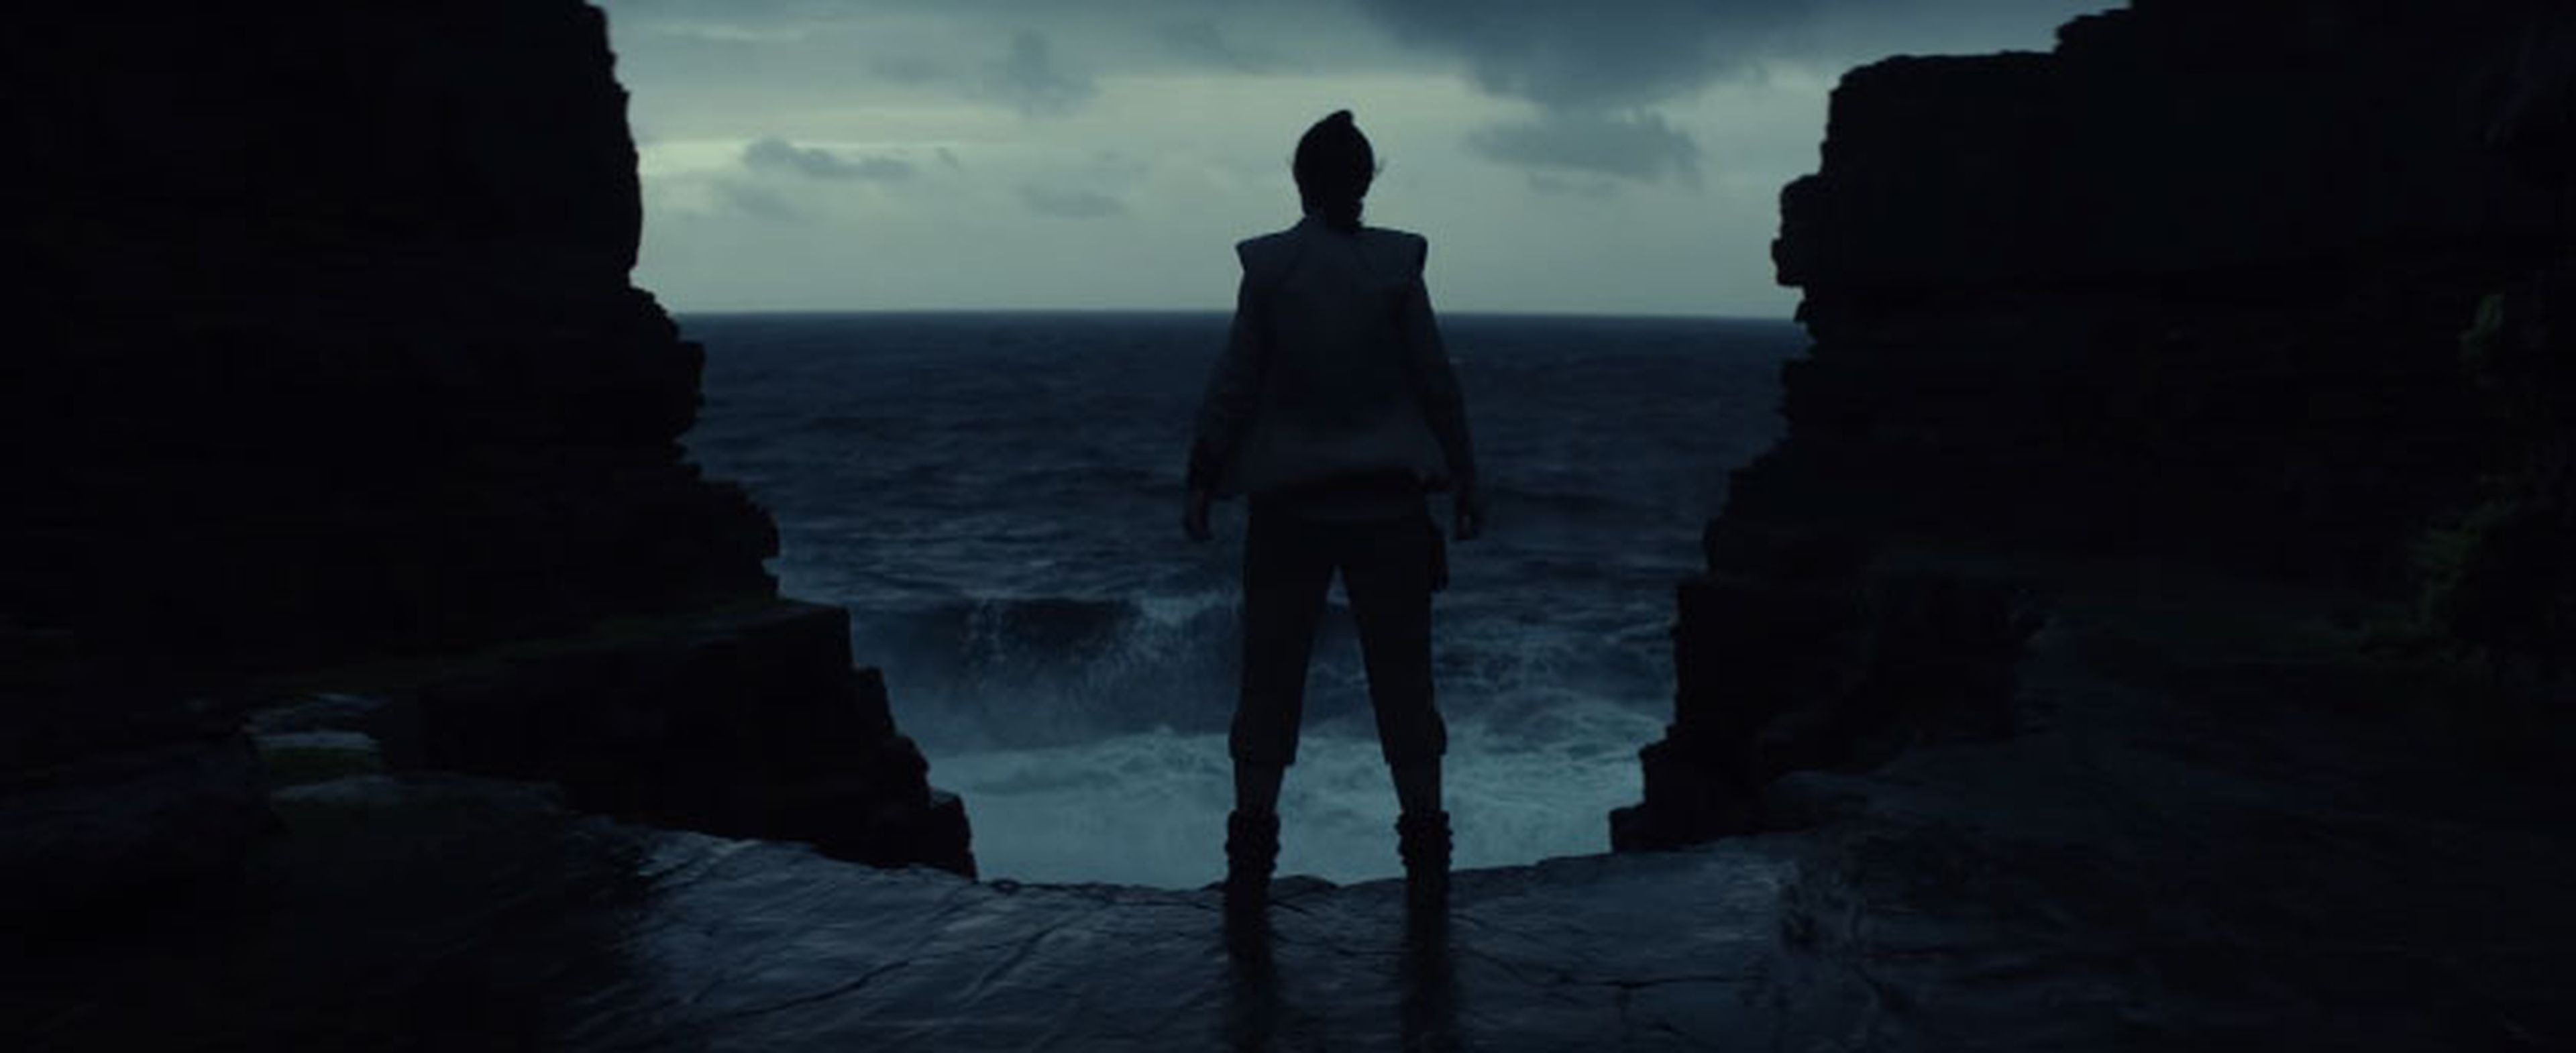 Star Wars- Episodio VIII - Los últimos Jedi - Imágenes del teaser tráiler